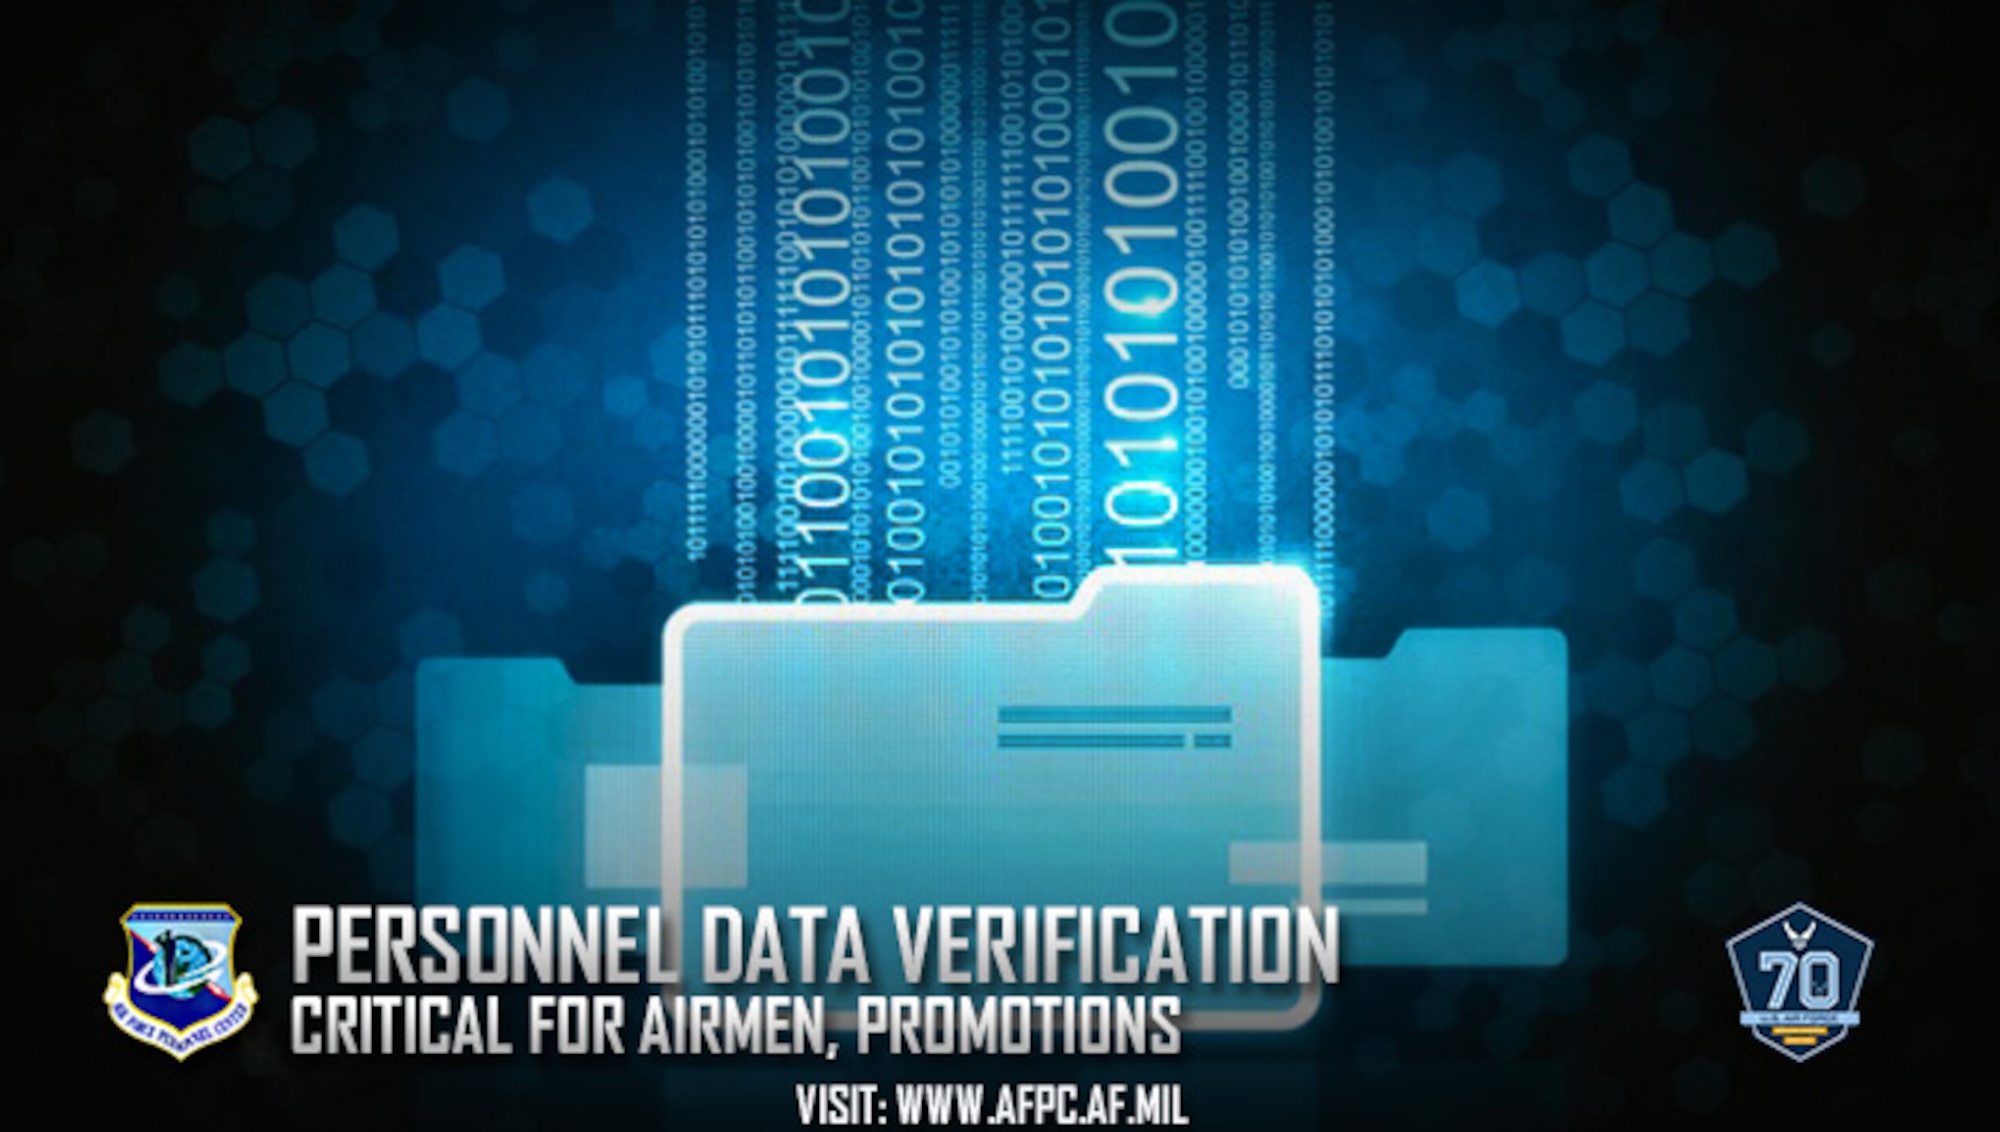 Personnel data verification critical for Airmen, promotions